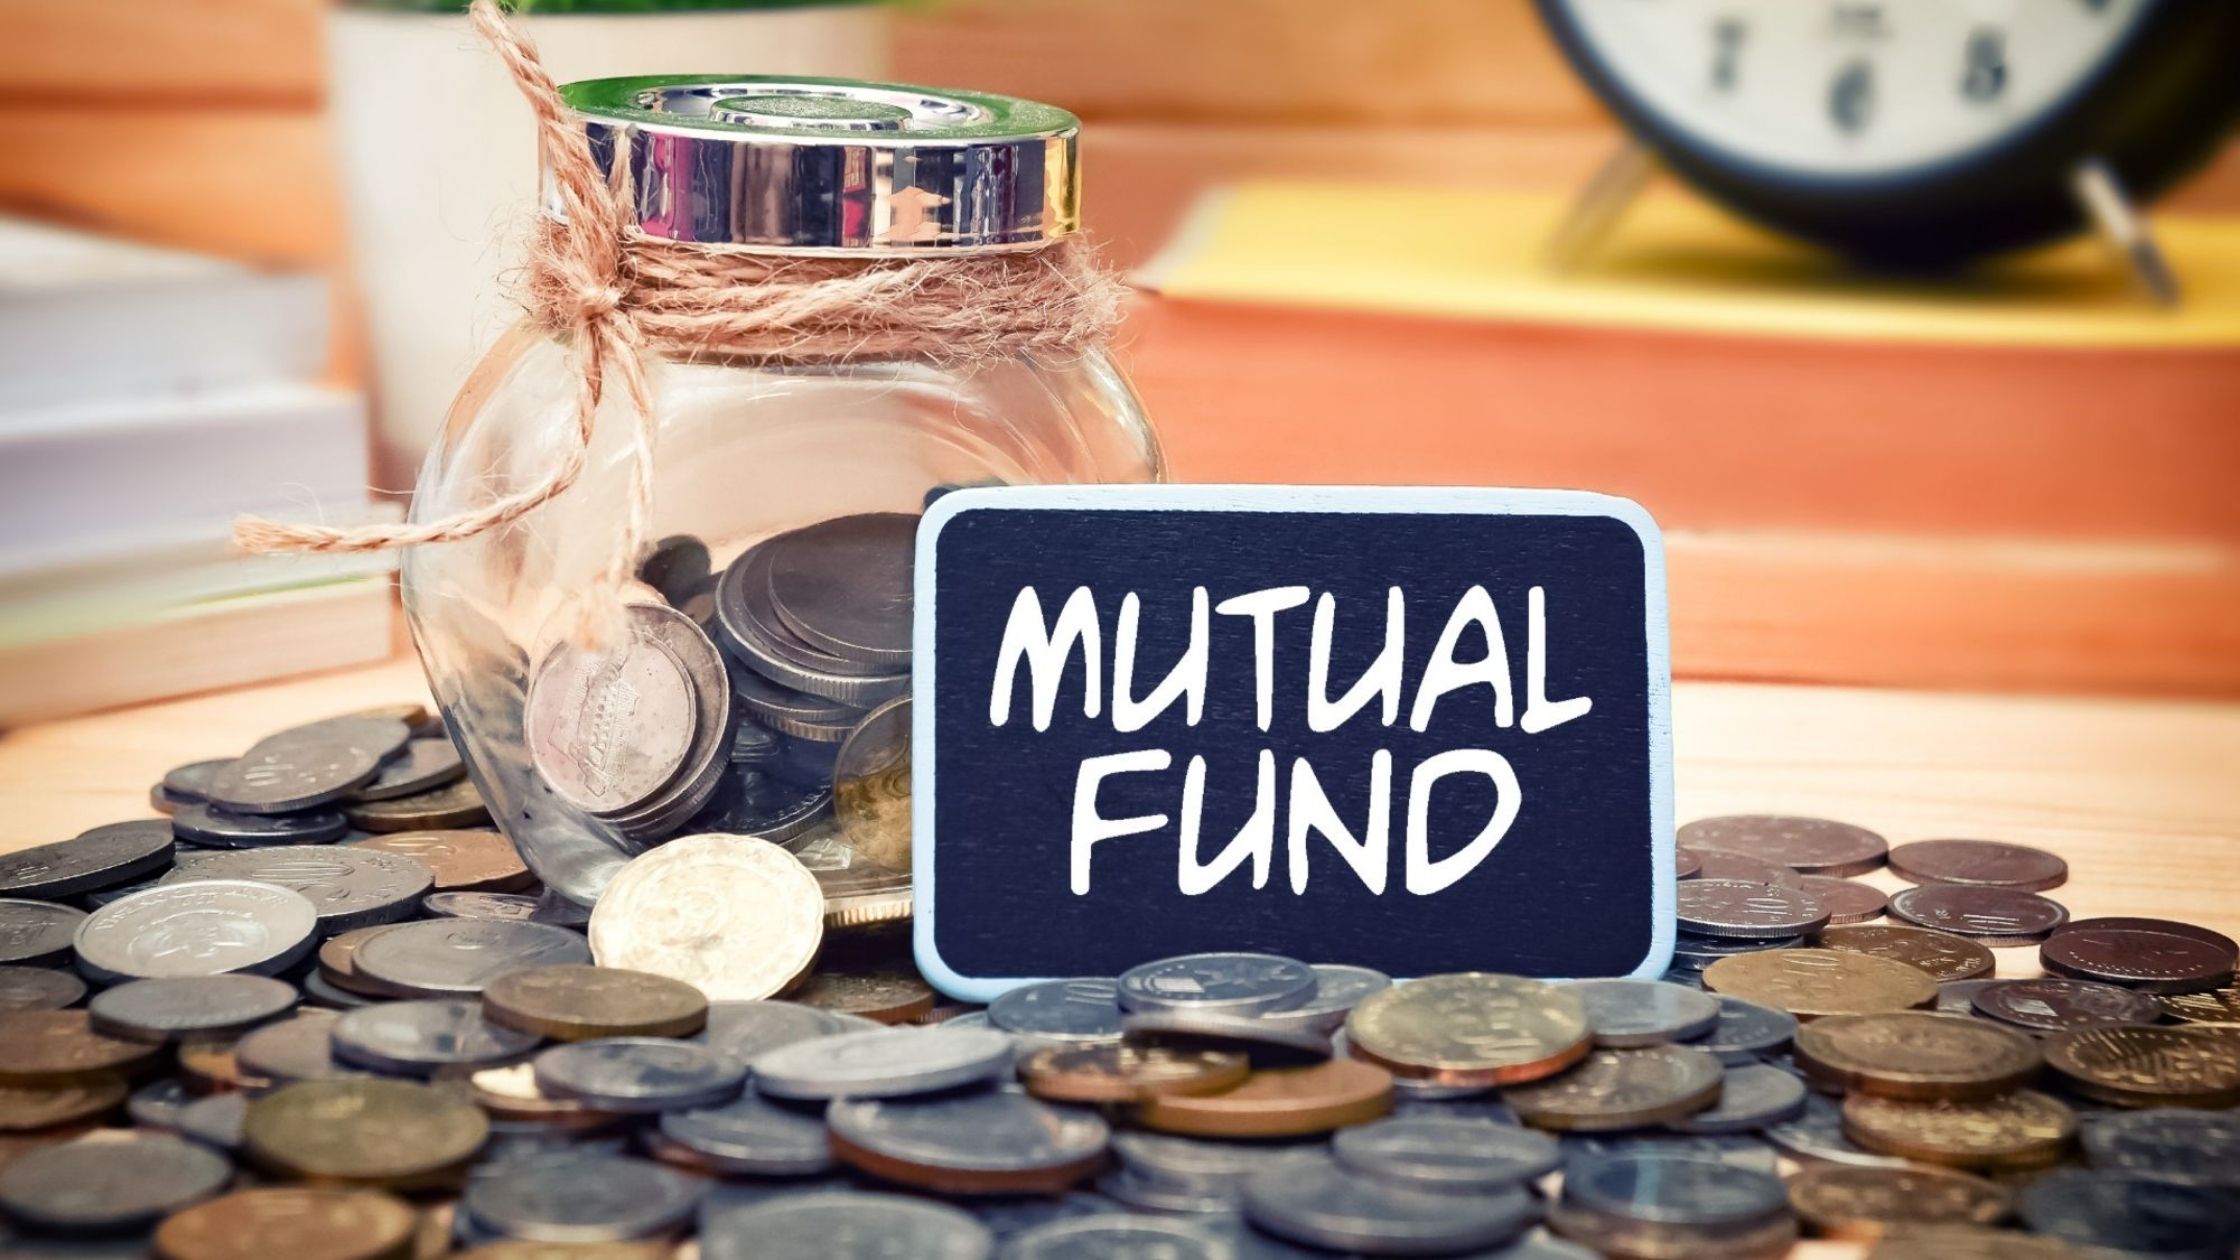 Number of mutual fund investors increased in Bihar